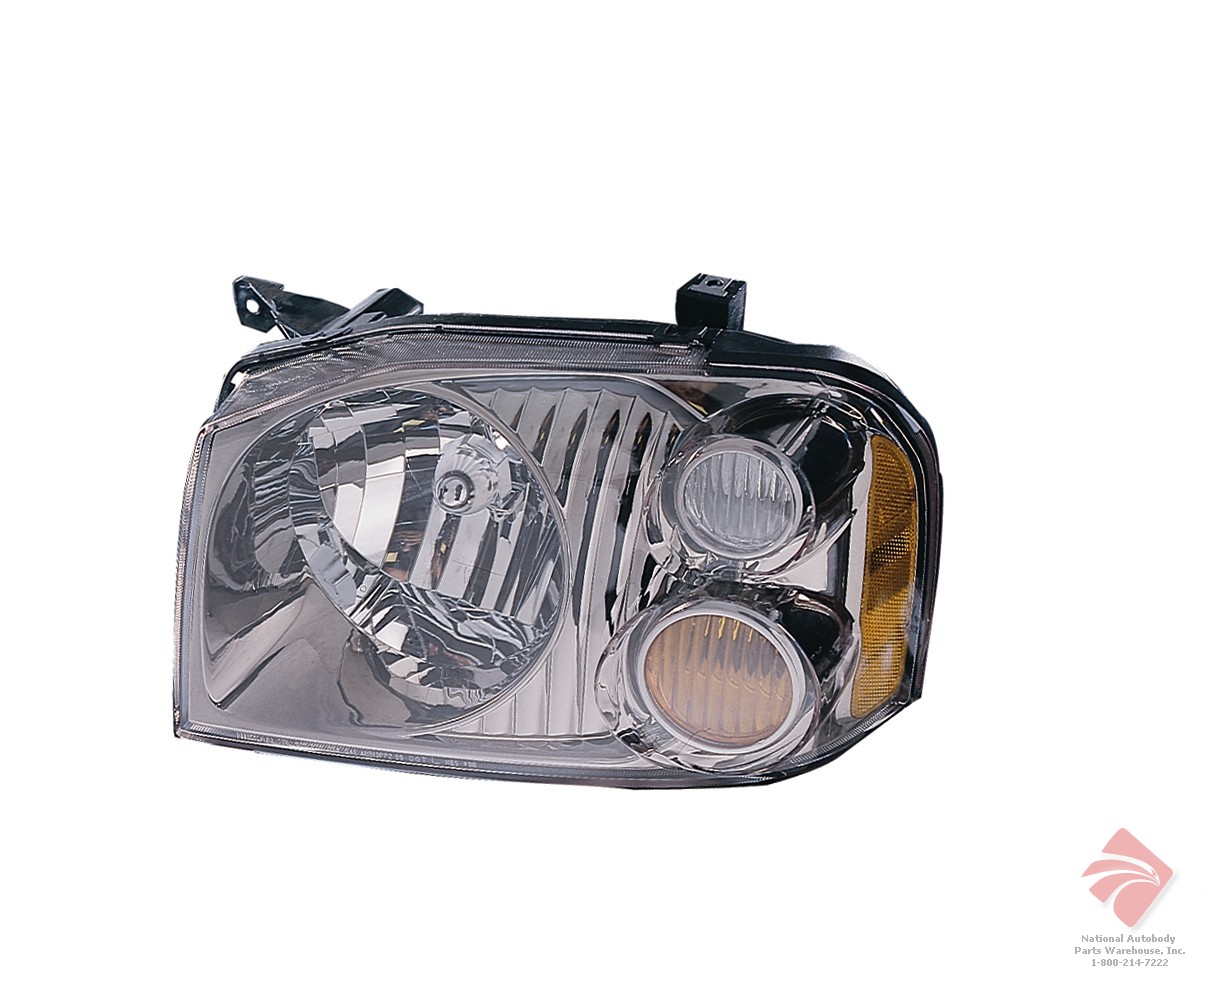 Aftermarket HEADLIGHTS for NISSAN - FRONTIER, FRONTIER,01-04,LT Headlamp assy composite